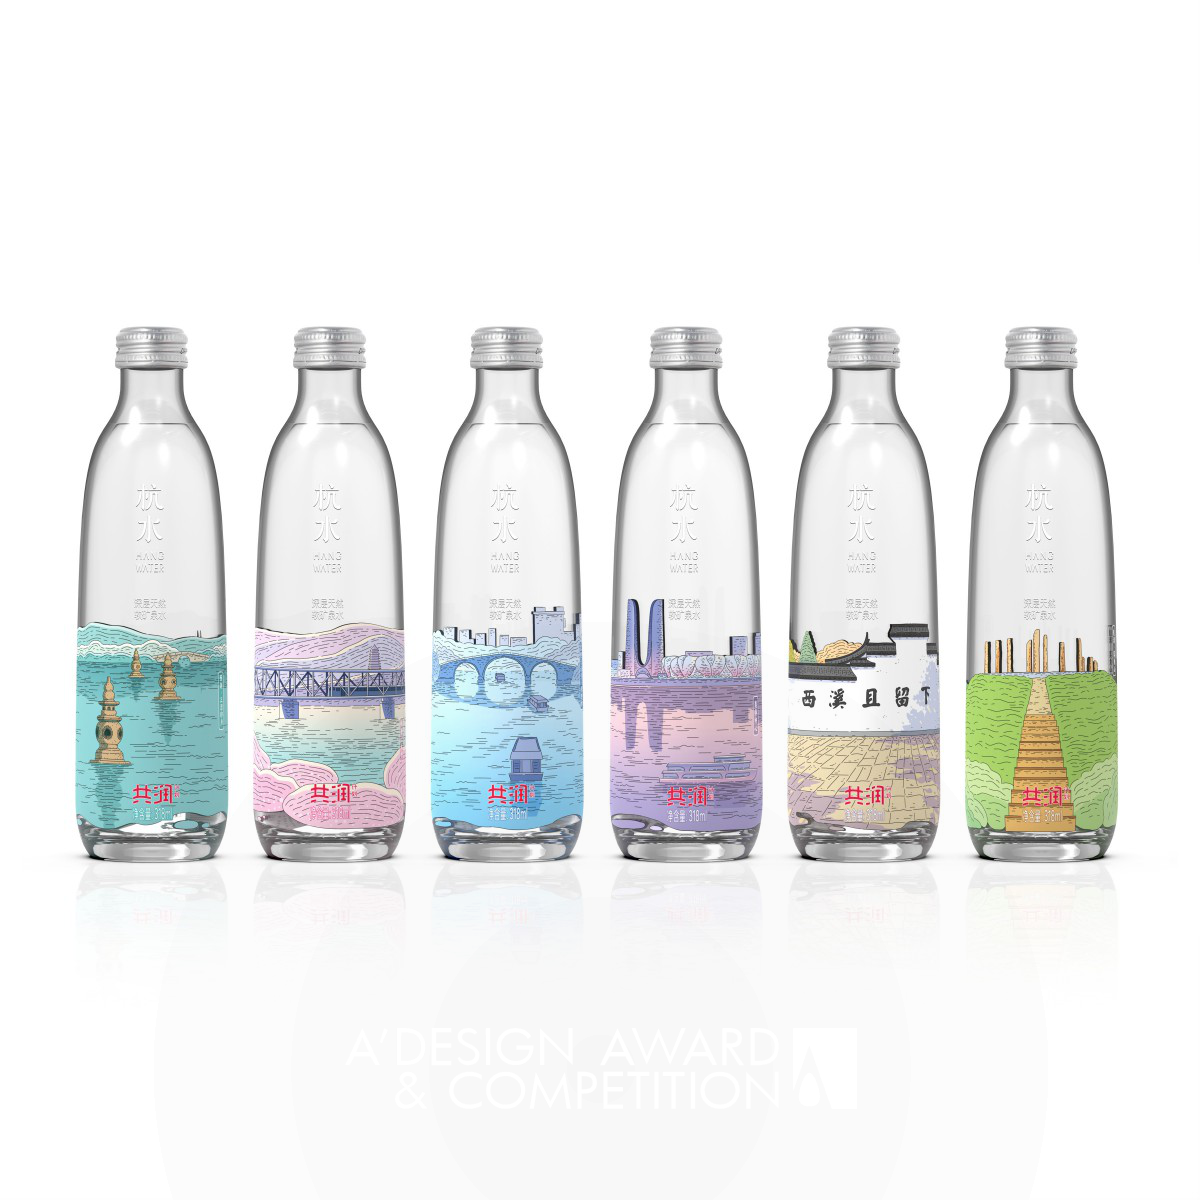 Hangzhou Scenery Mineral Water Packaging by Peng GuoZhi